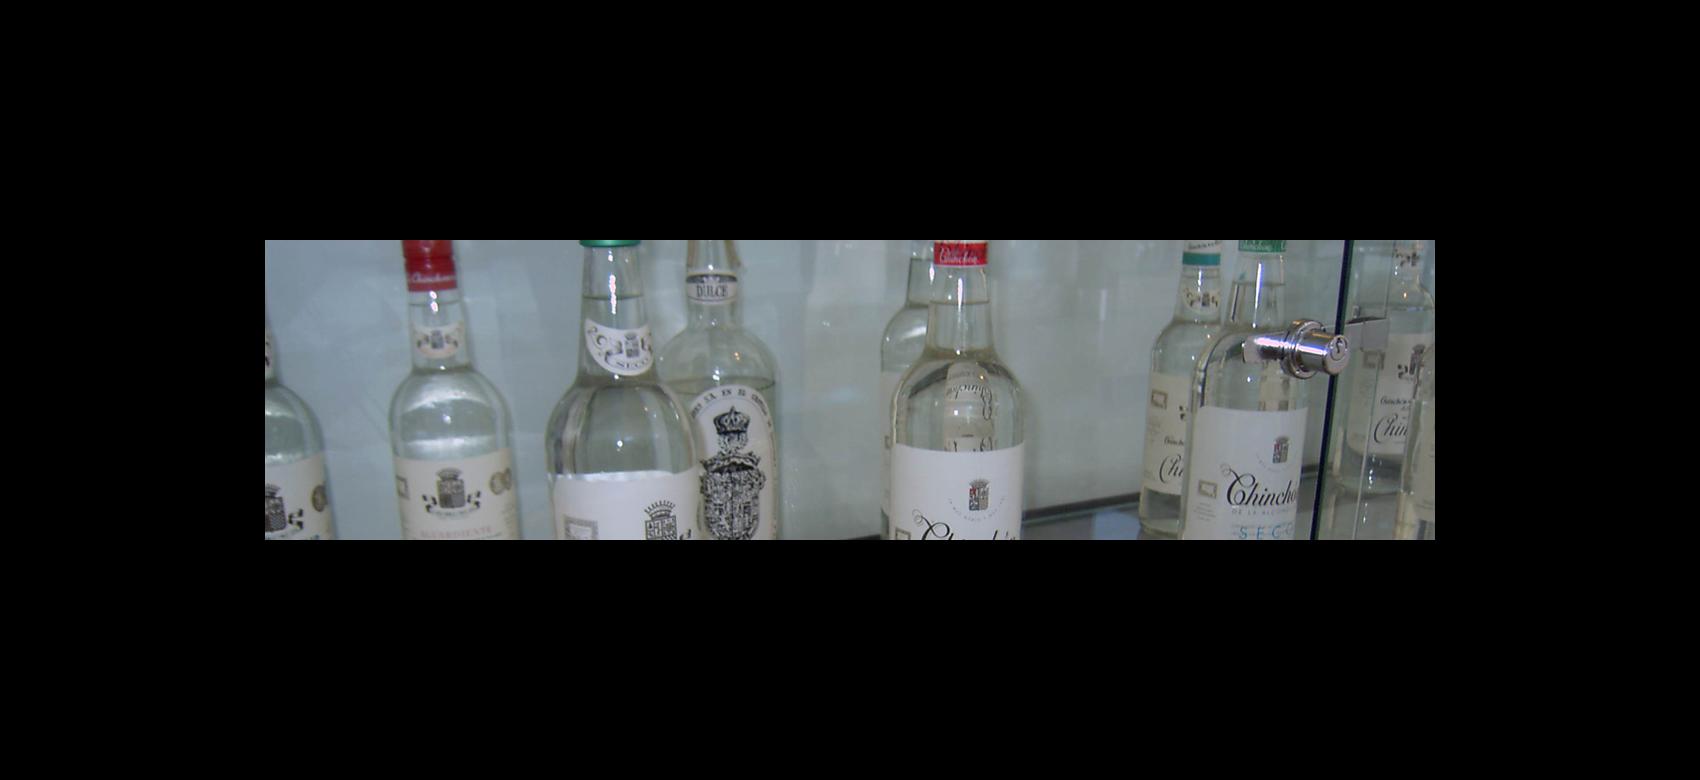 Imagen de botellas de anís de Chinchón